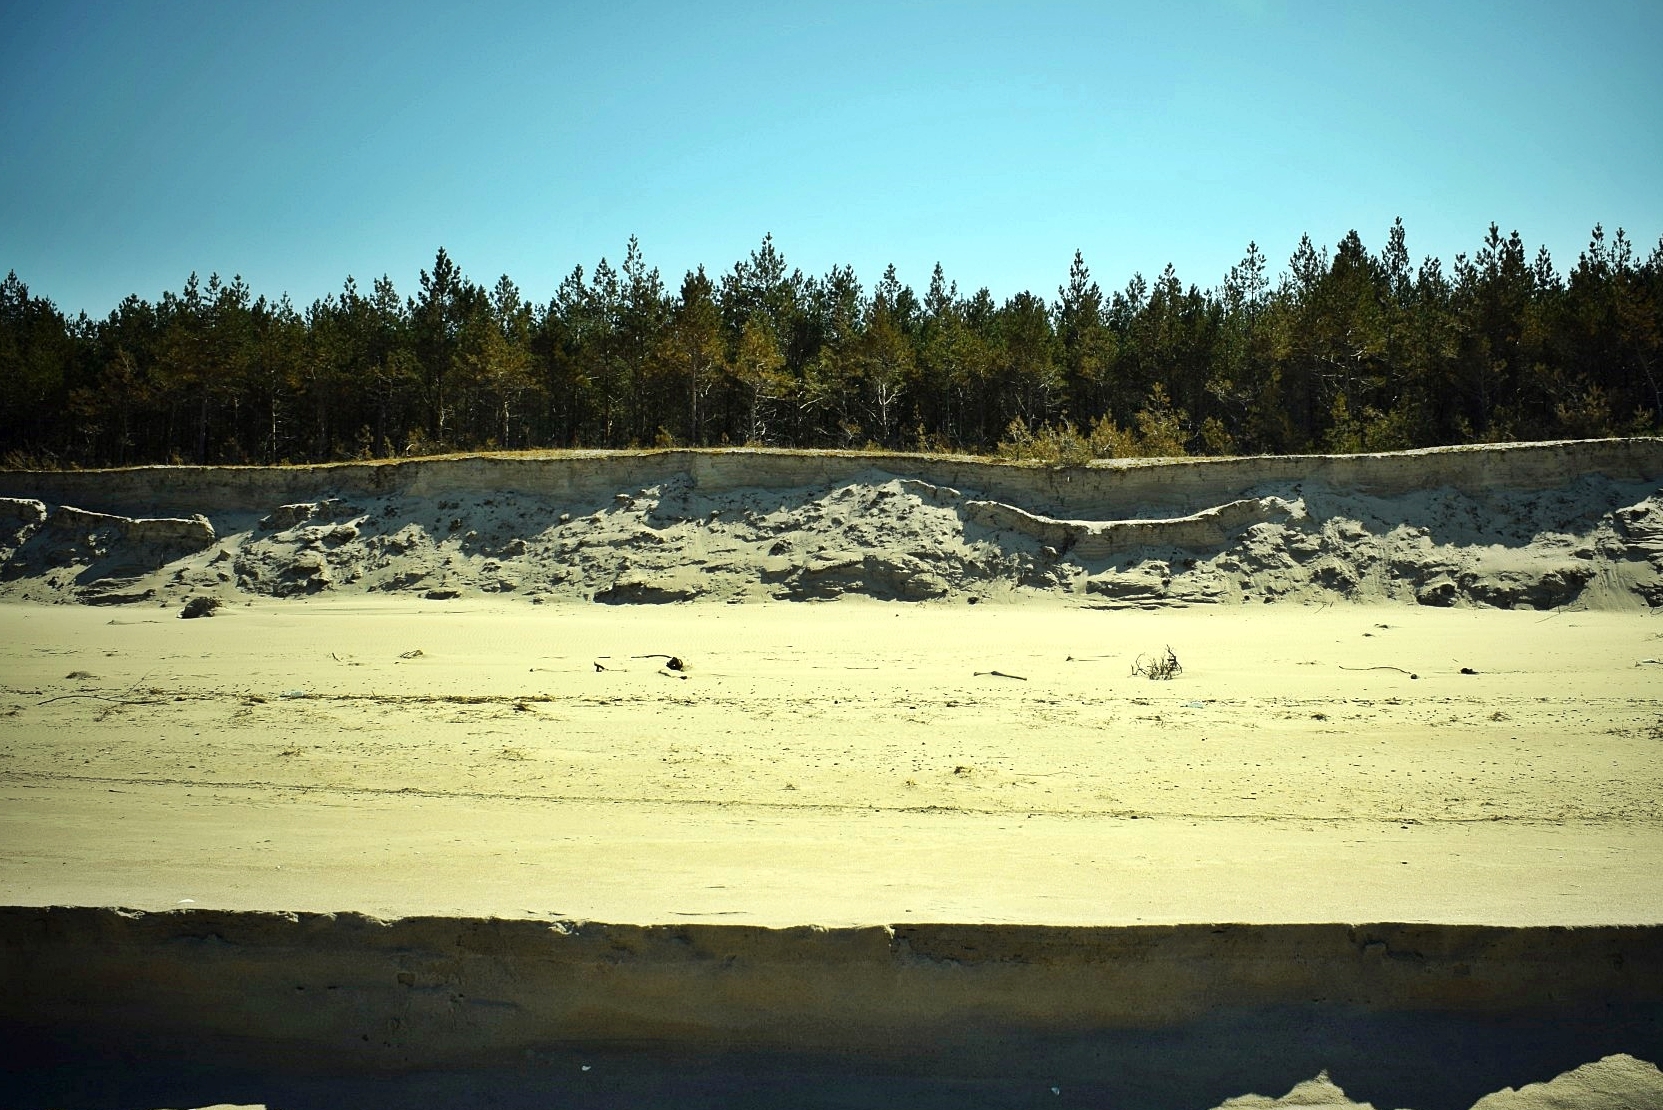 Zdjęcie zrobione z linii brzegu, prostopadle w kierunku lądu, obrazujące stopień na plaży, utworzony przez zmycie części materiału przez fale. Na drugim planie pozostałości wydmy białej po przejściu sztormu.